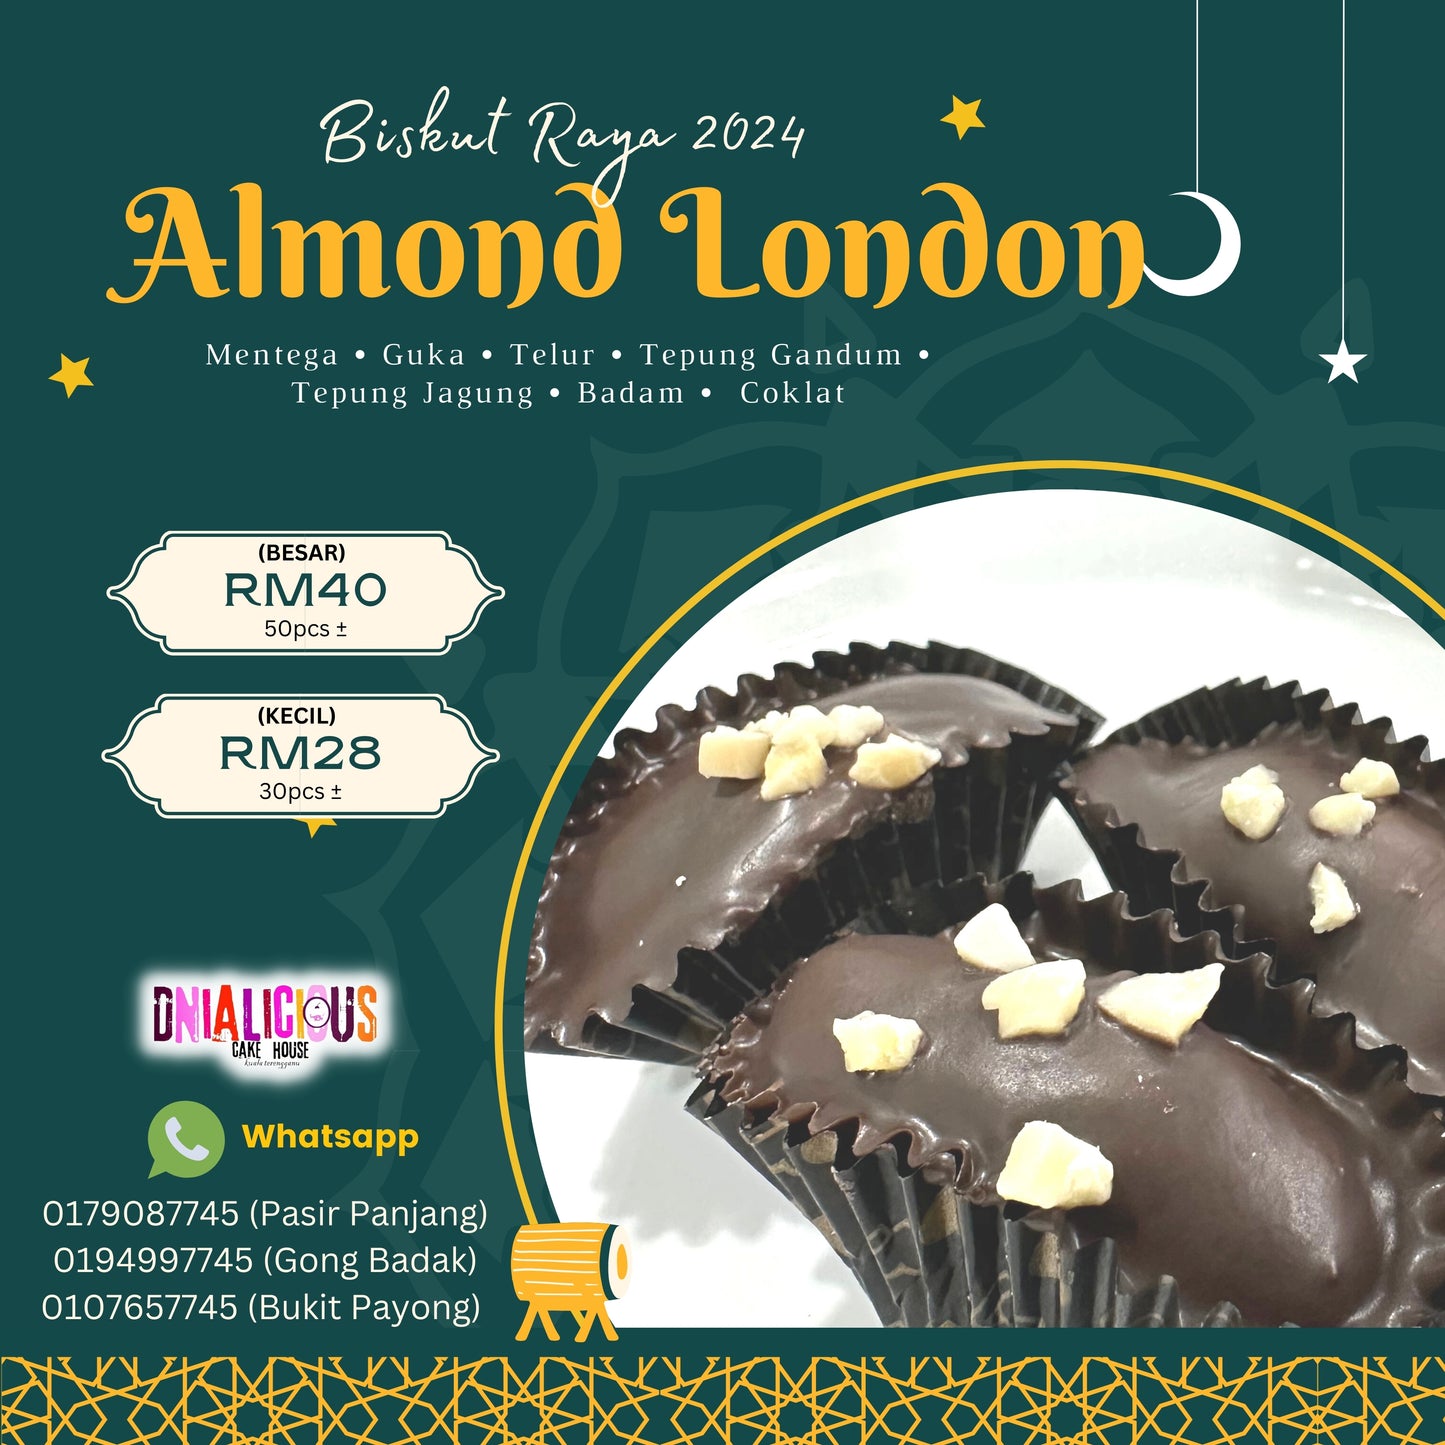 Almond London